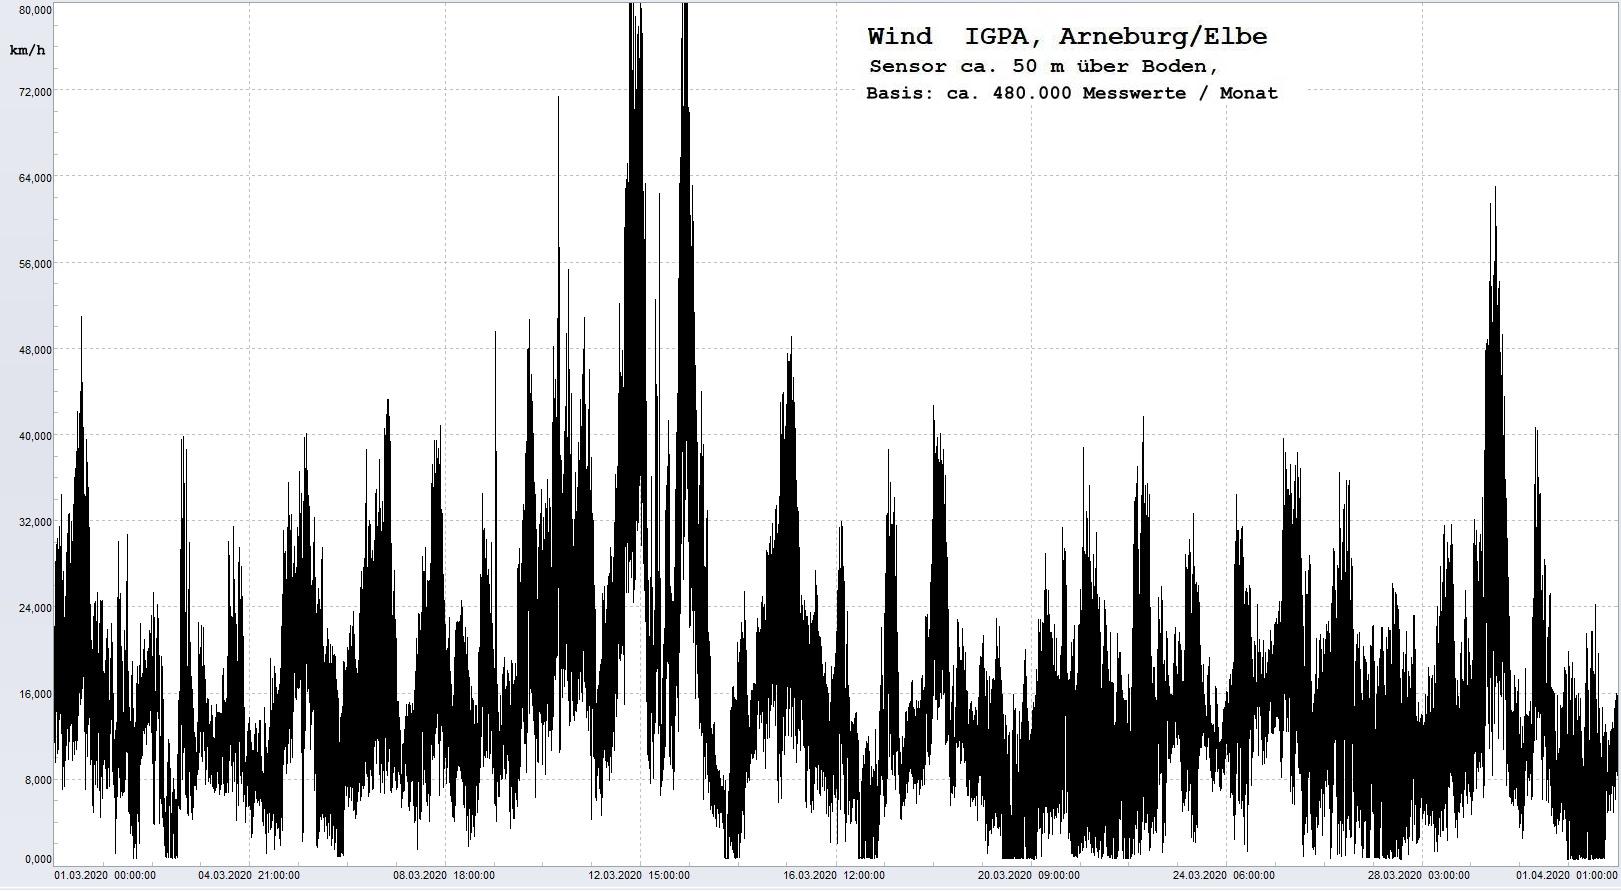 Arneburg Histogramm Winddaten Monat März 2020, 
  Sensor auf Gebäude, ca. 50 m über Erdboden, Basis: 5s-Aufzeichnung